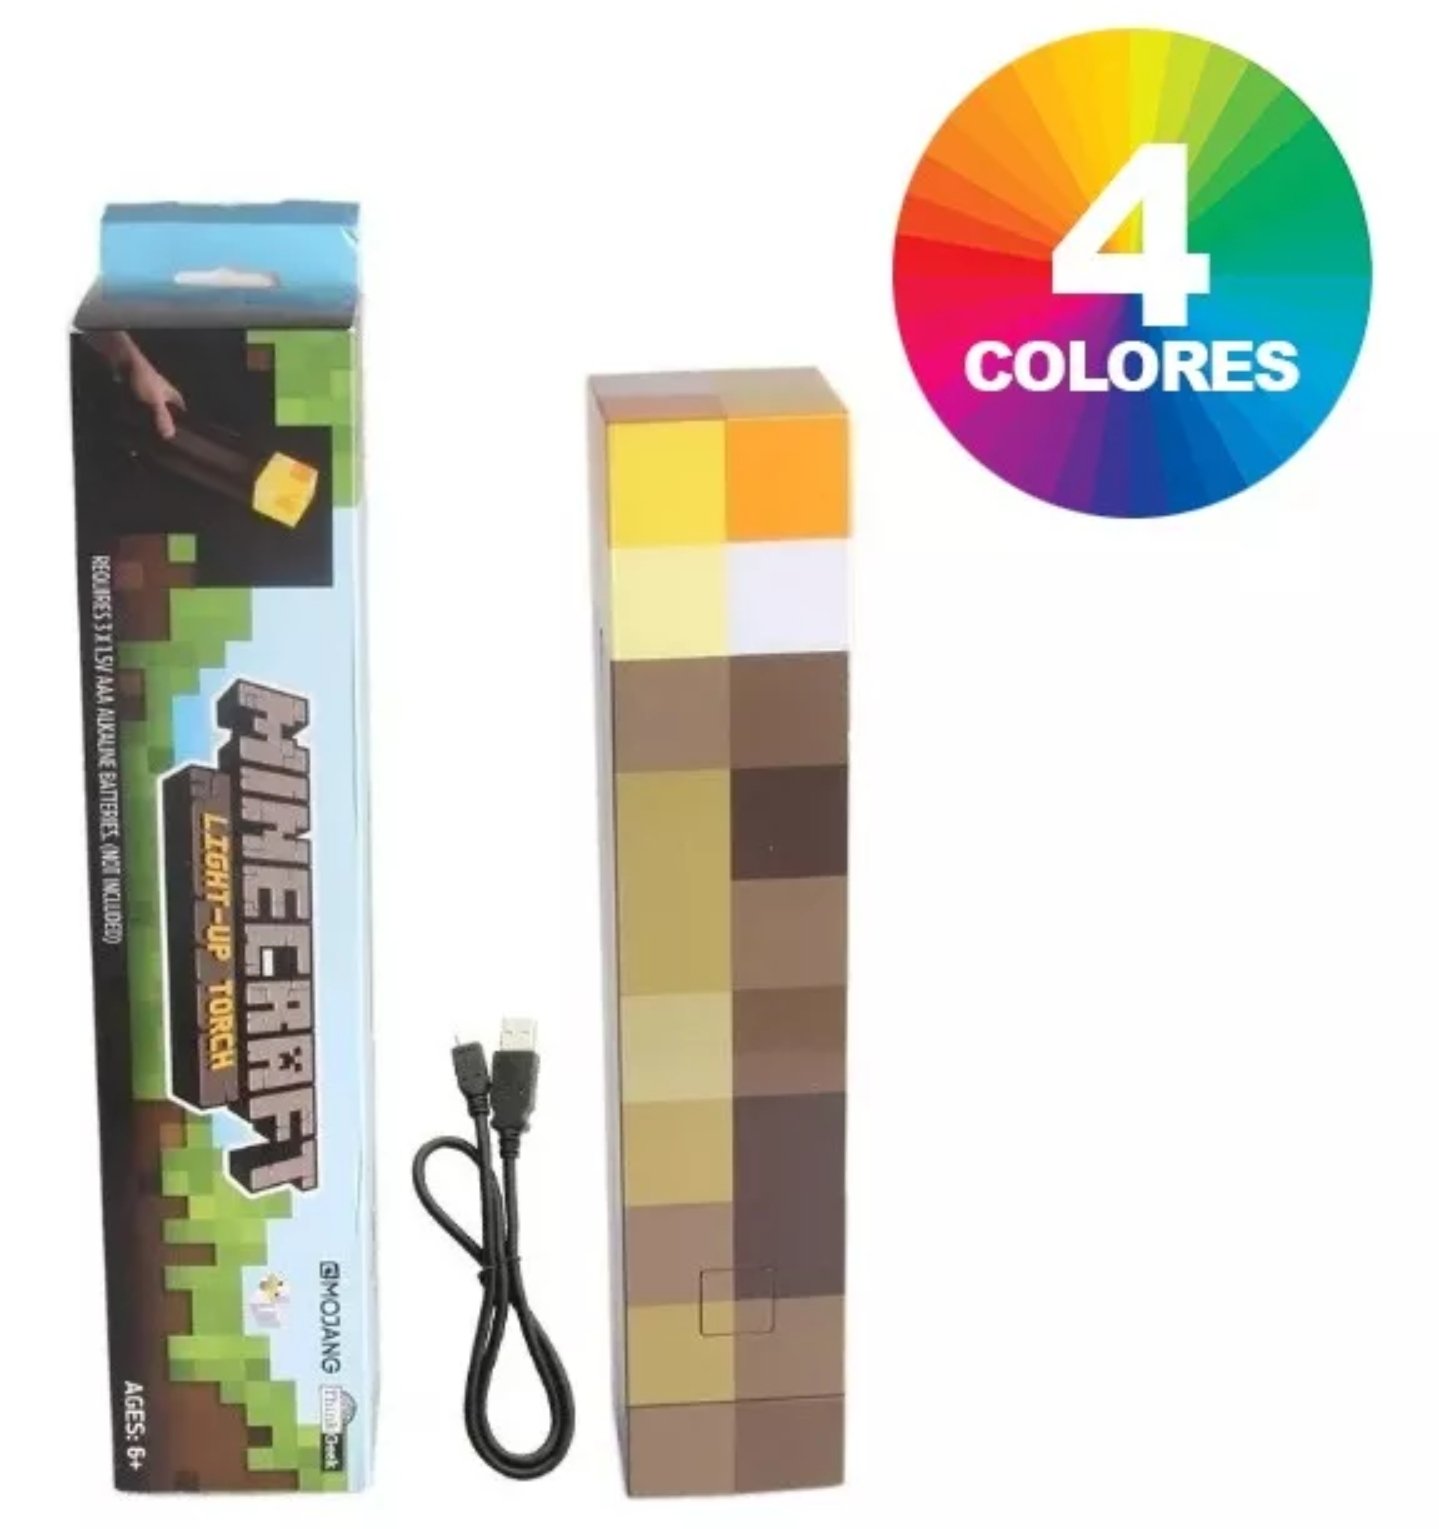 Lámpara Led de 4 Colores, Antorcha Tipo Minecraft